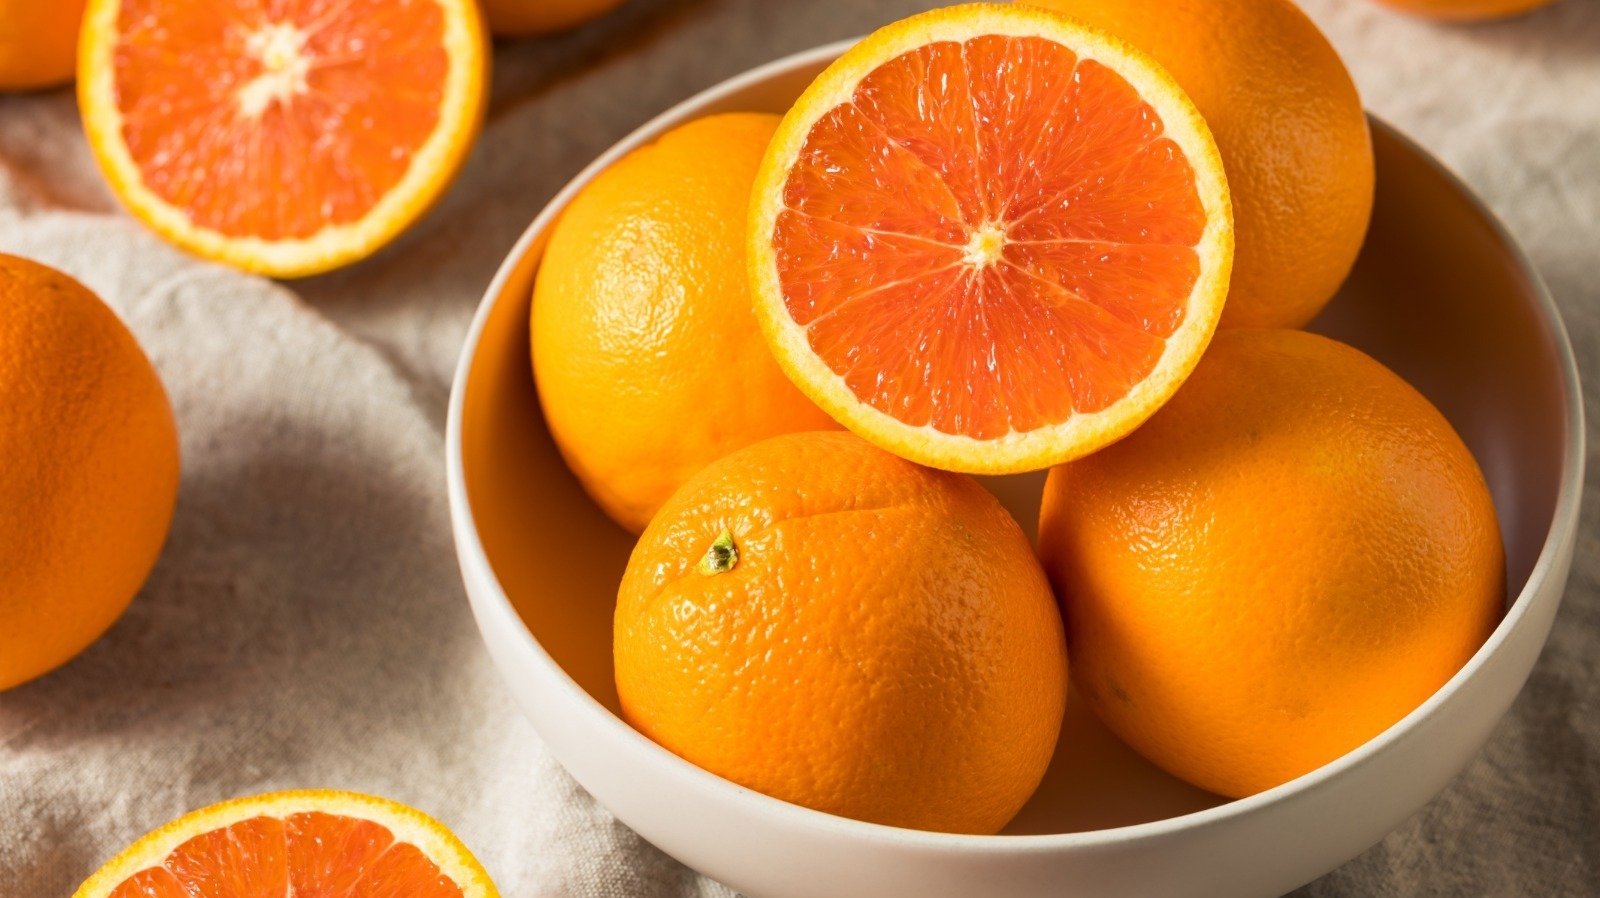 She likes oranges. Сок кровавого апельсина. Апельсин navel Chocolate. Вагон с апельсинами. Картинки оранжевые апельсин дыня морковь на столе.